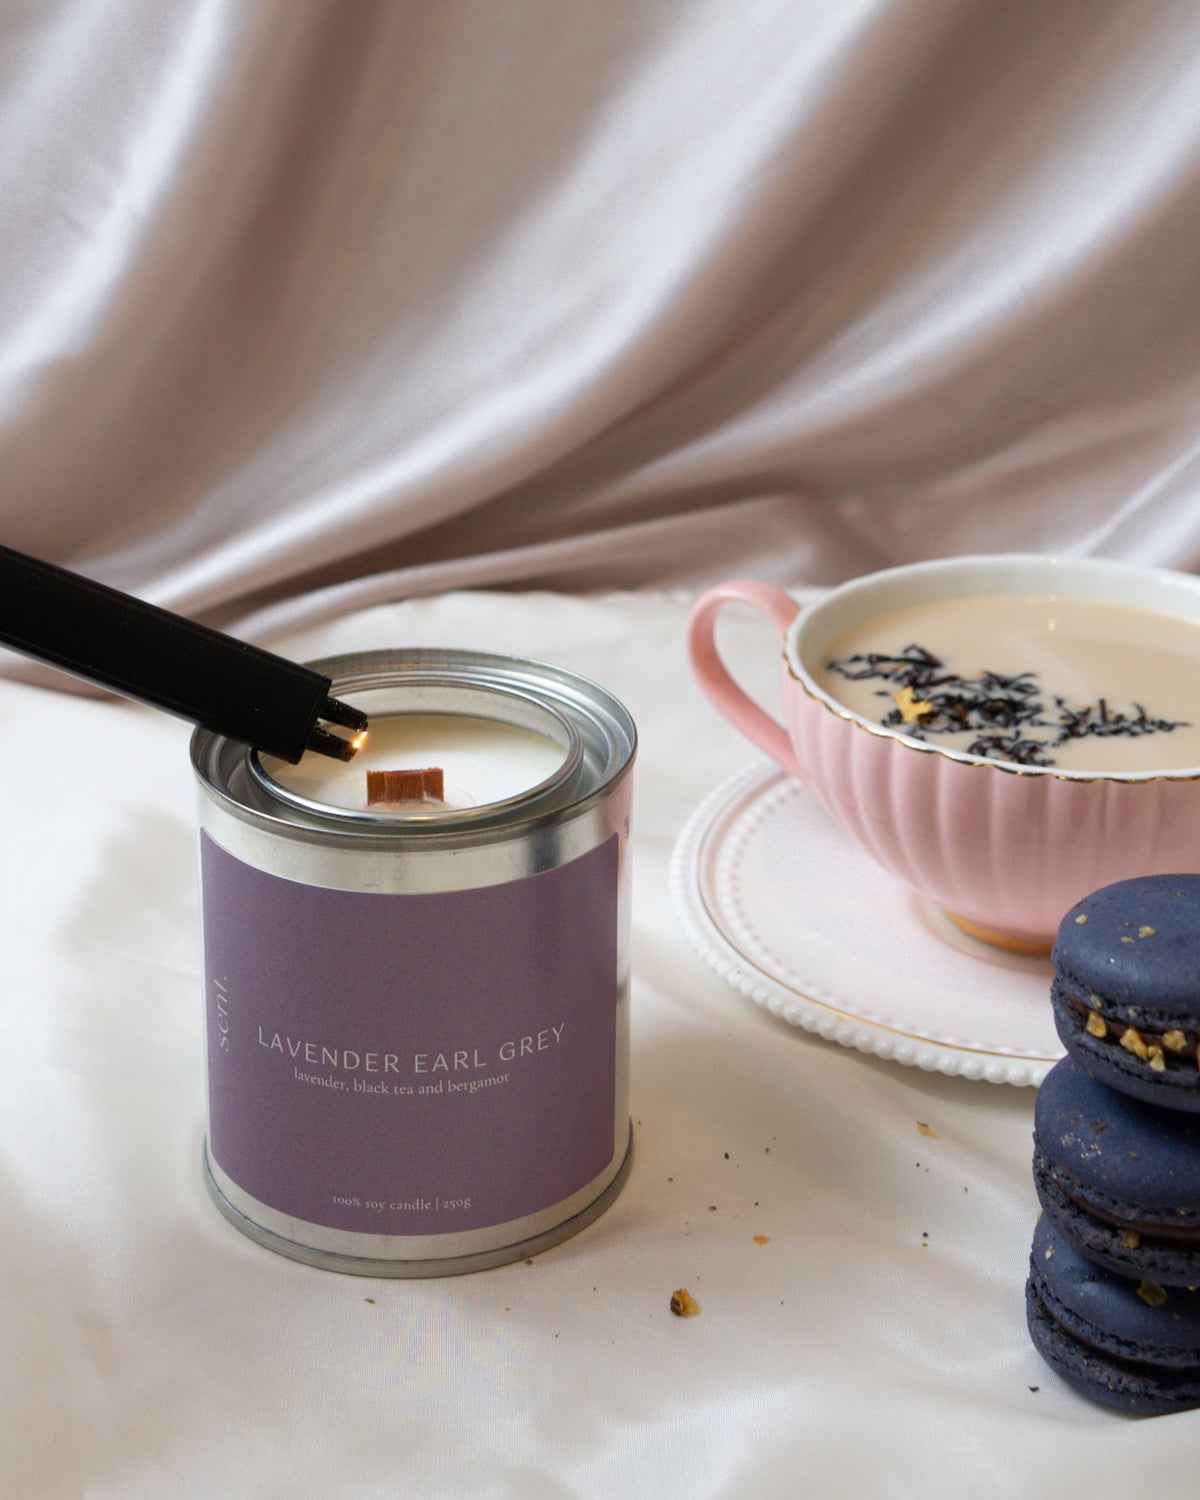 Lavender Earl Grey | Lavender + Black Tea + Bergamot